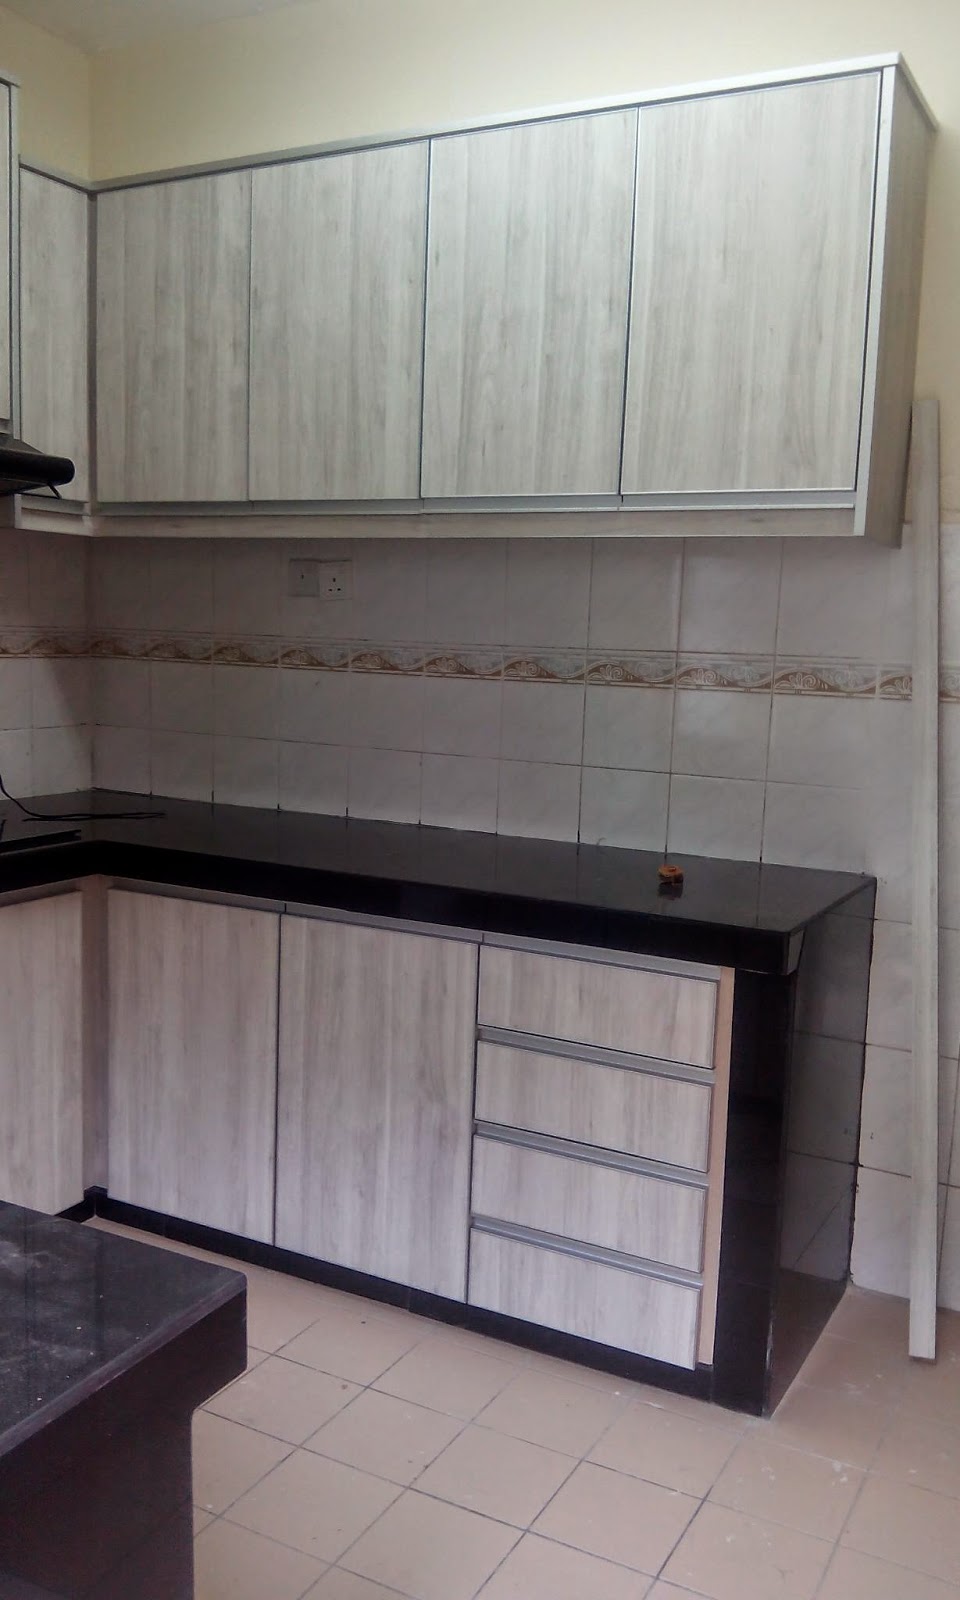  kabinet  dapur terus dari kilang Kabinet  dapur 2014 